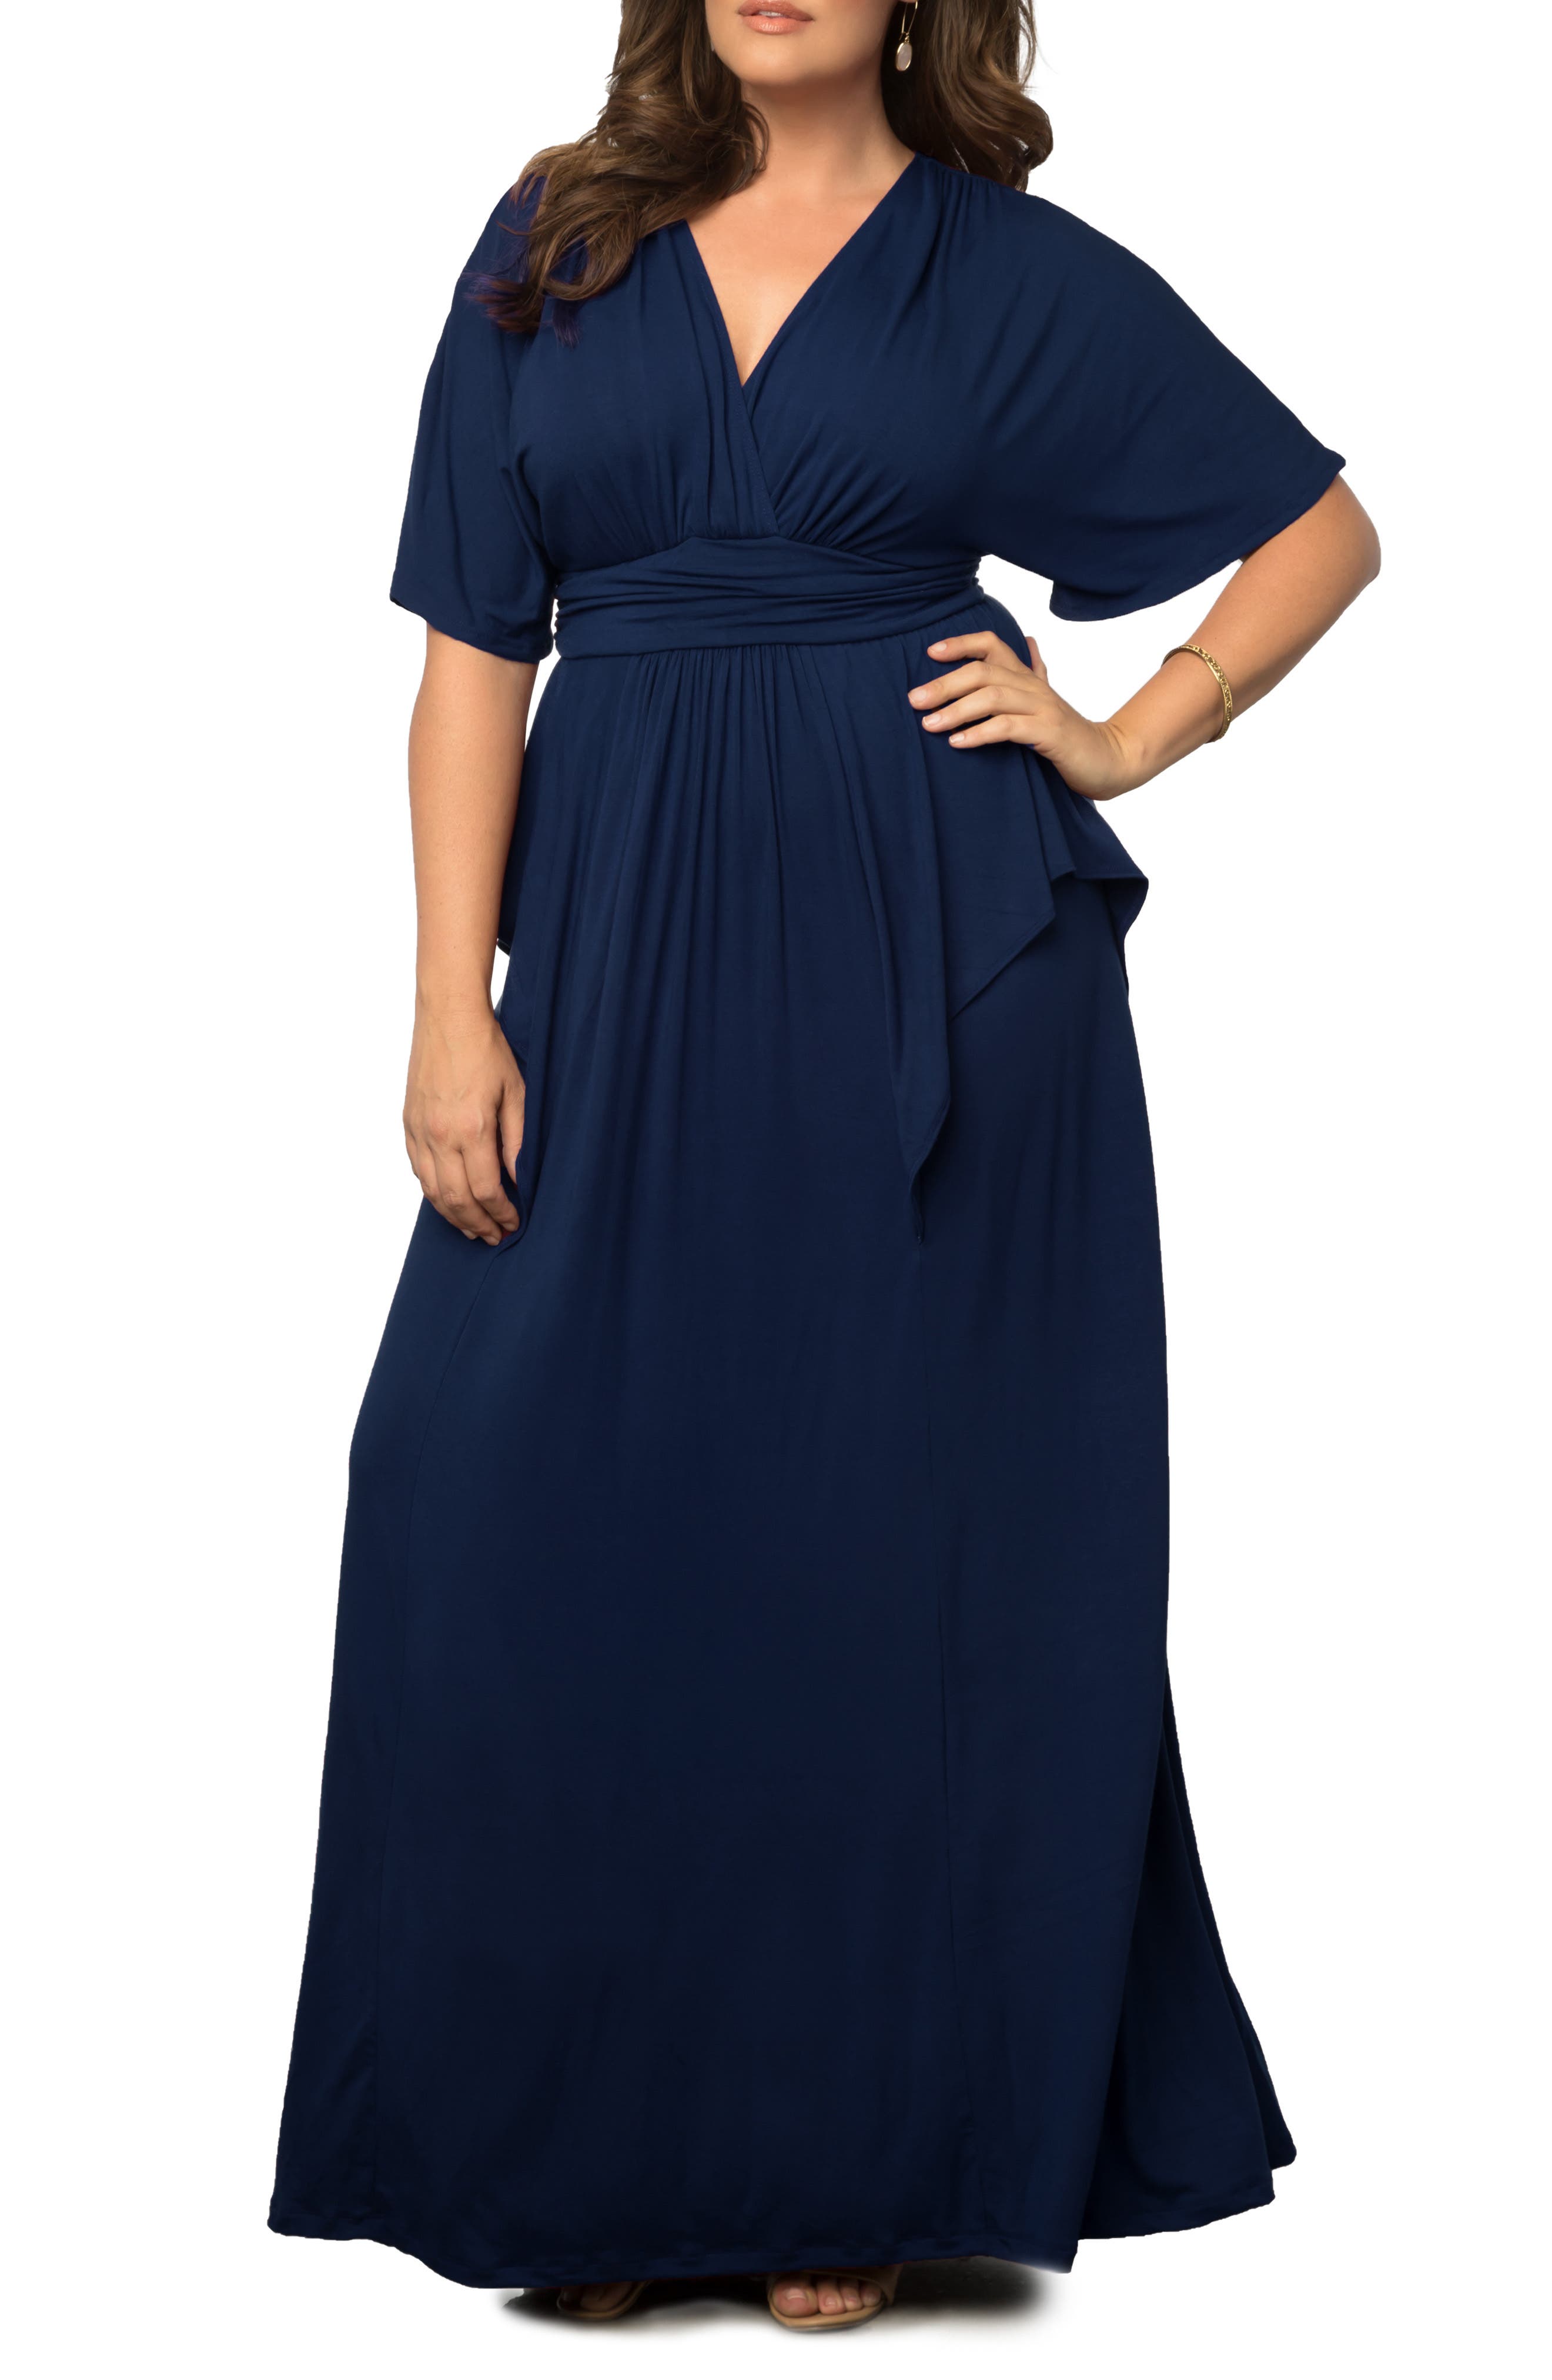 Blue Plus Size Dresses for Women ...